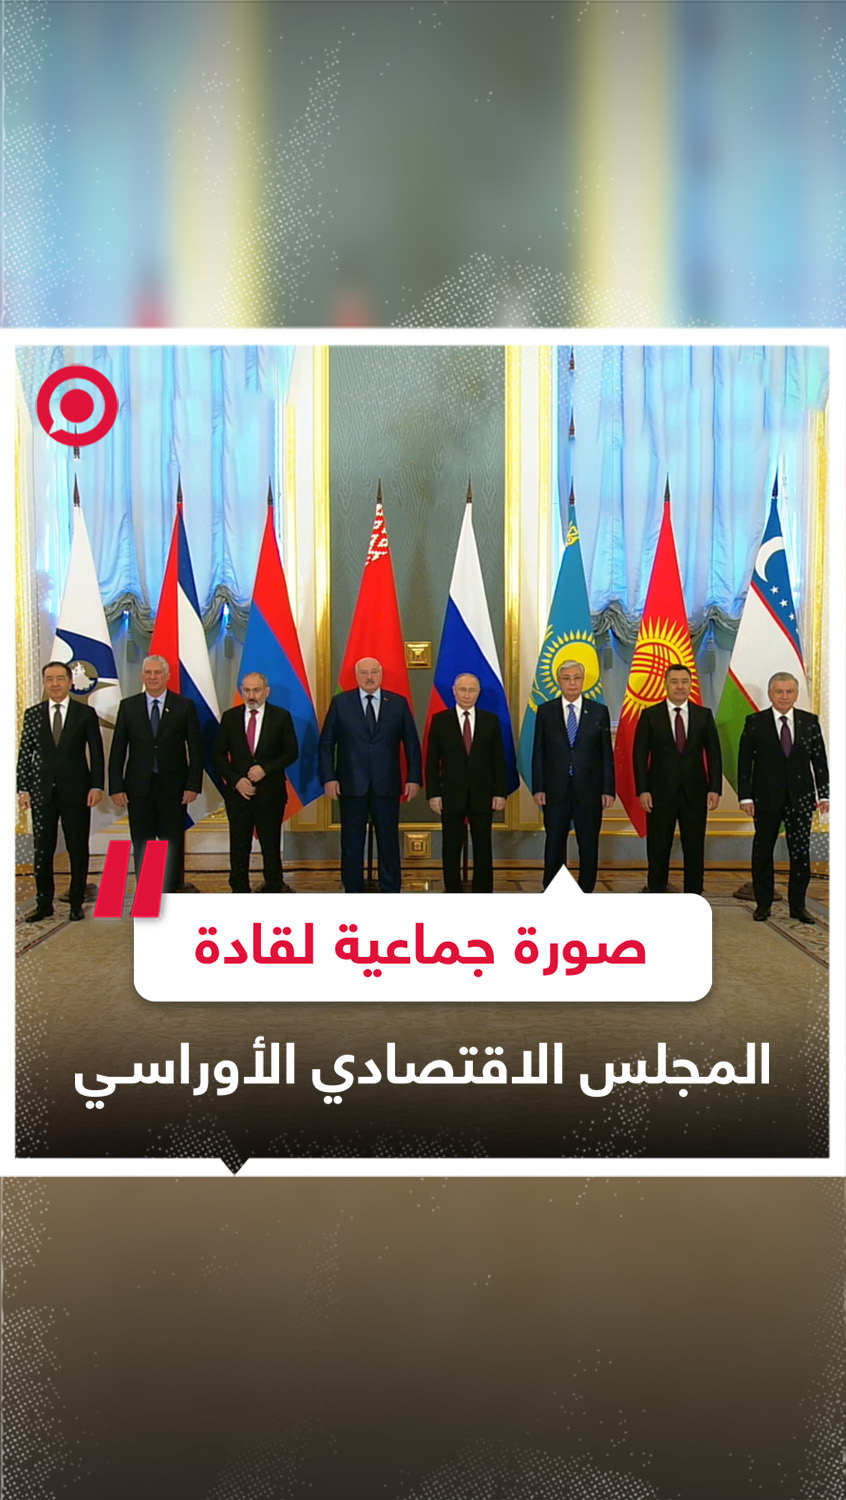 صورة جماعية لقادة دول المجلس الاقتصادي الأوراسي